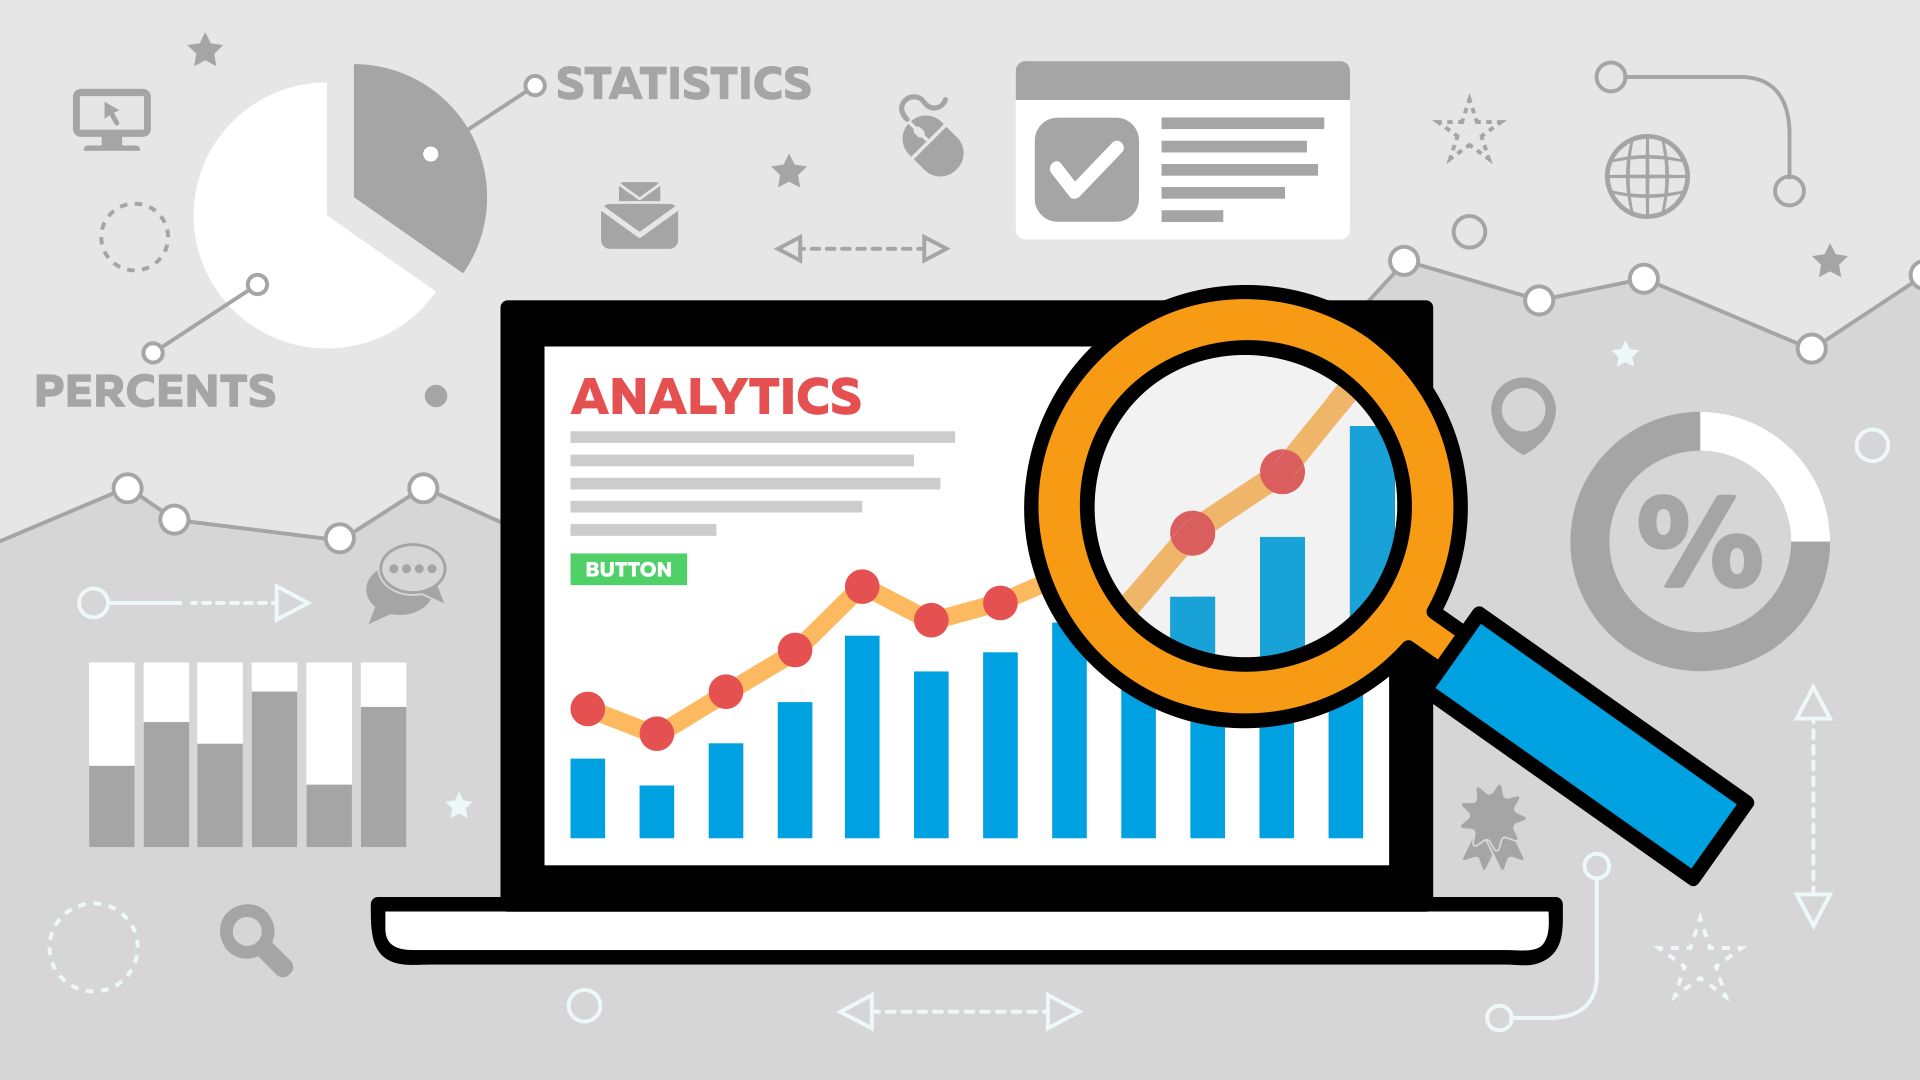 Phân tích website là quá trình đo lường, thu thập và phân tích dữ liệu để đánh giá hiệu quả và tối ưu hóa website.